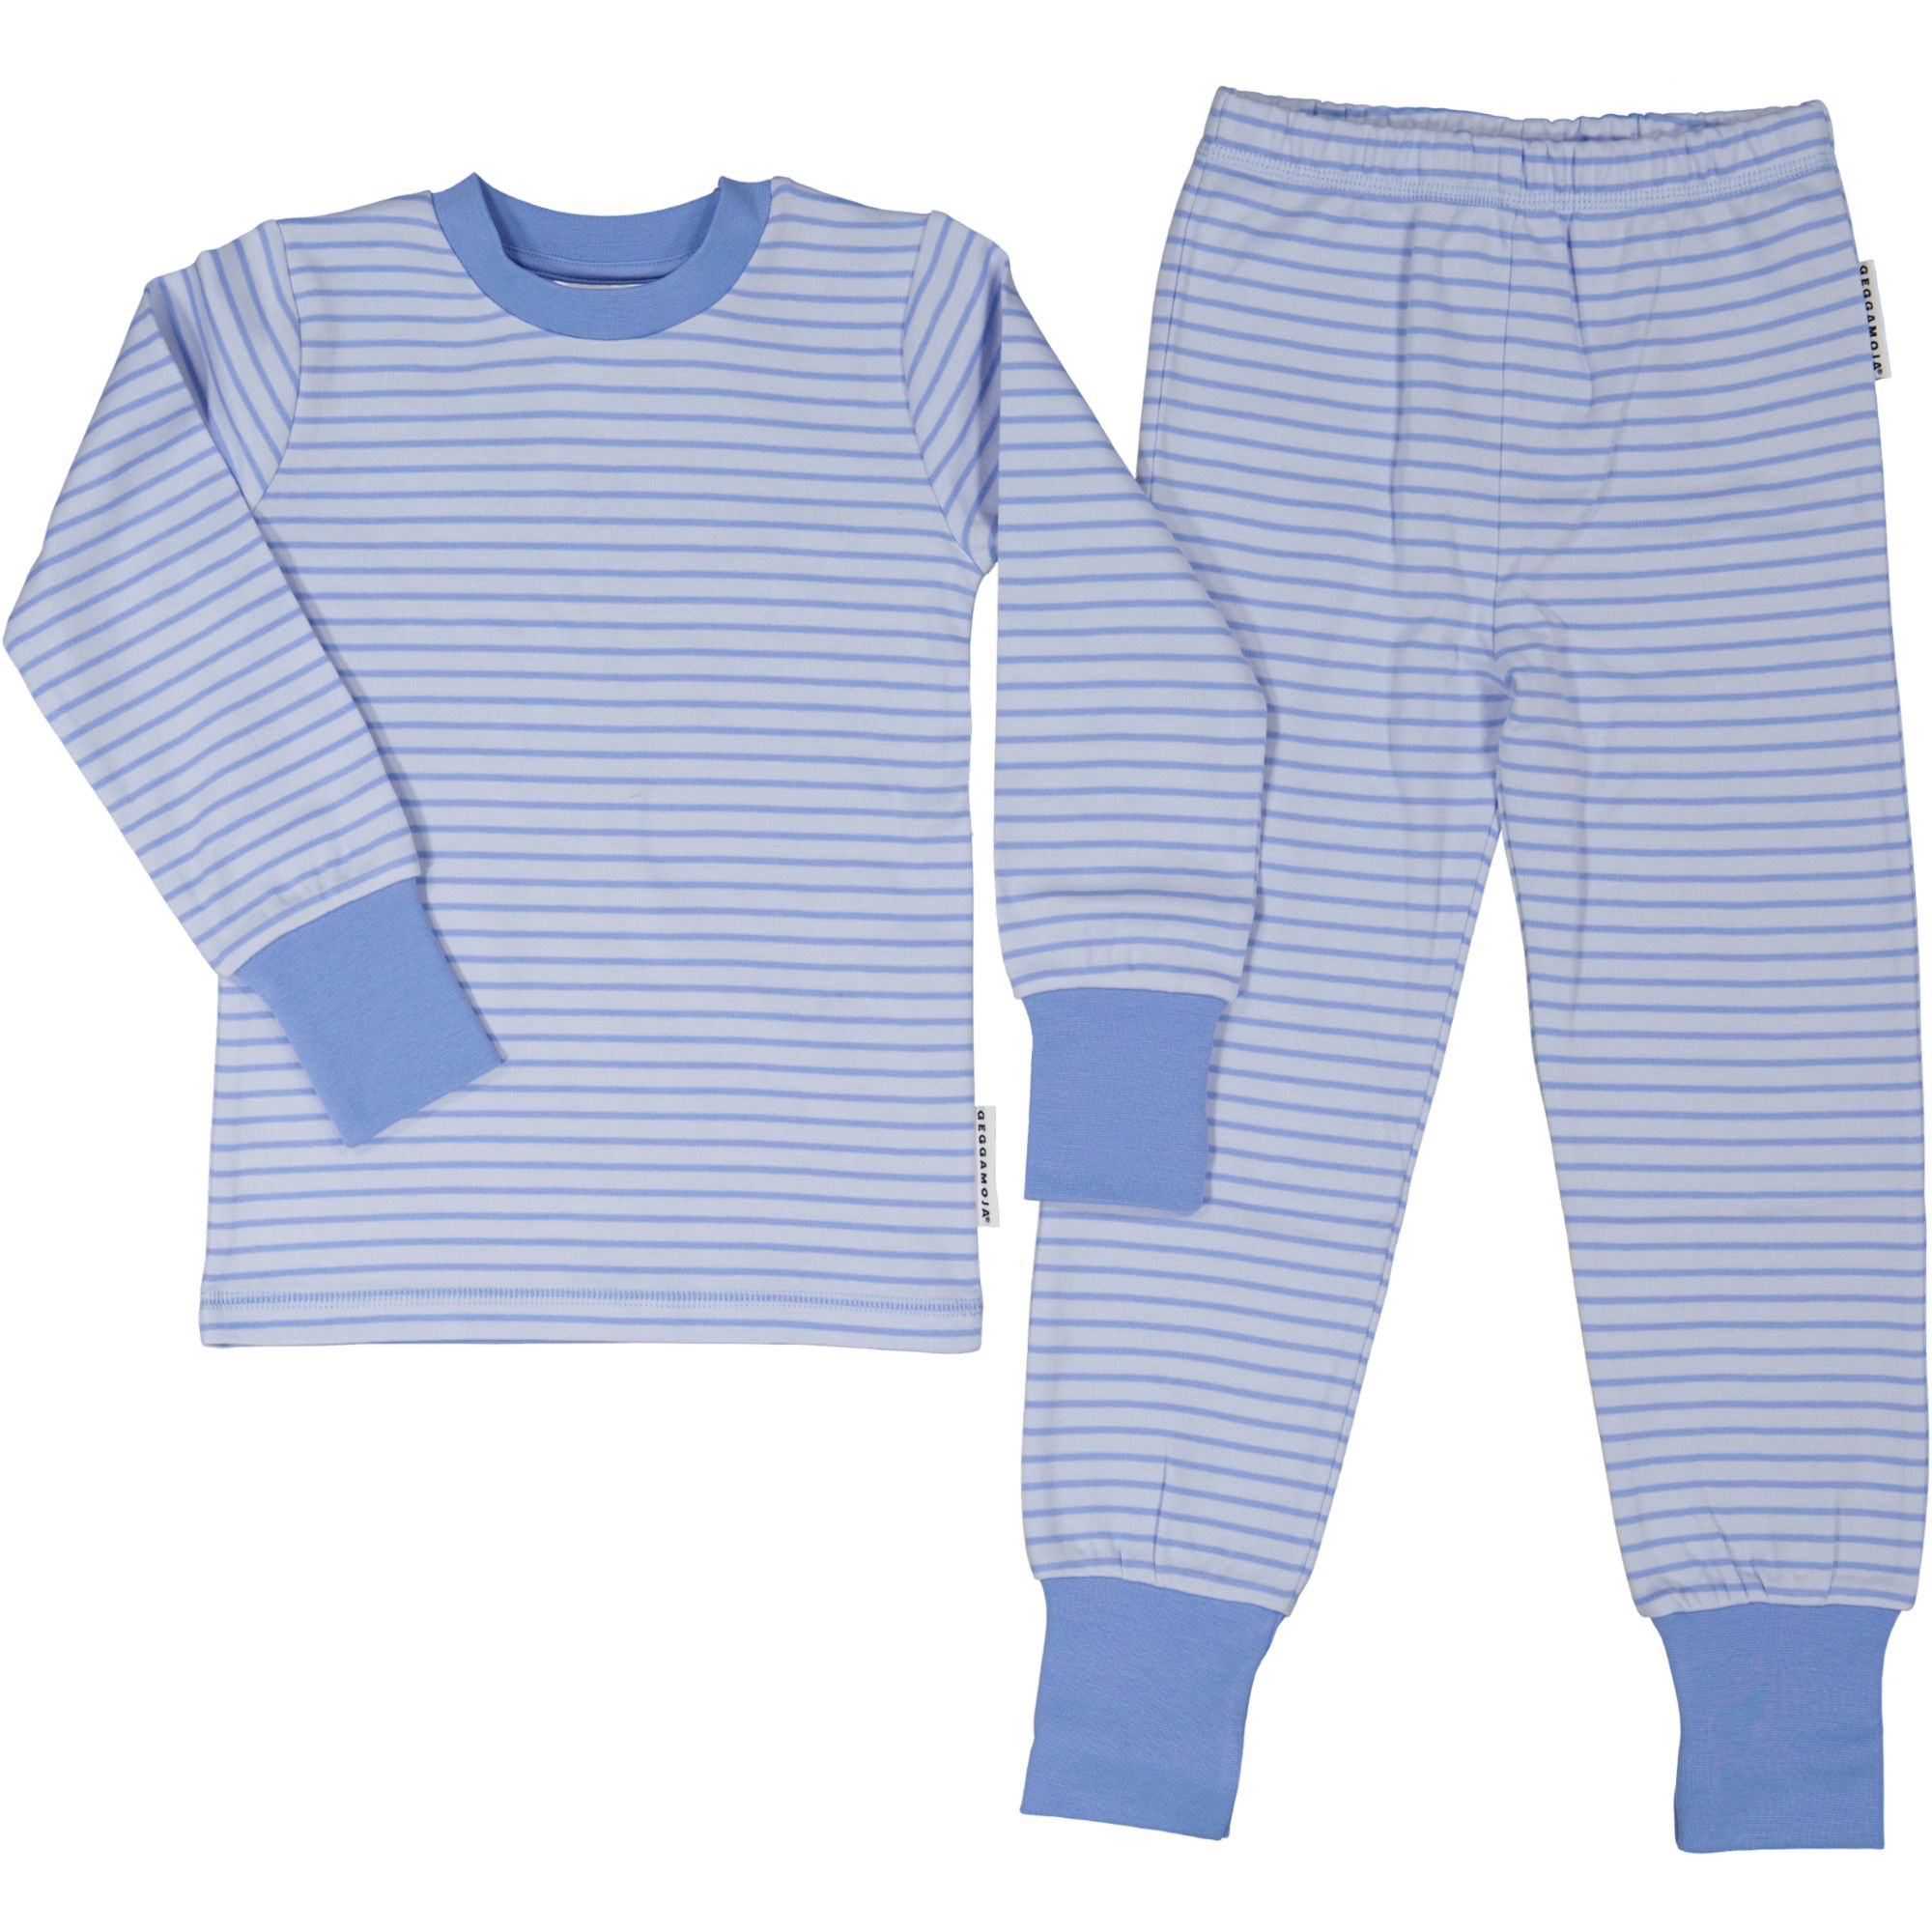 Pyjamas tvådelad Ljusblå/blå